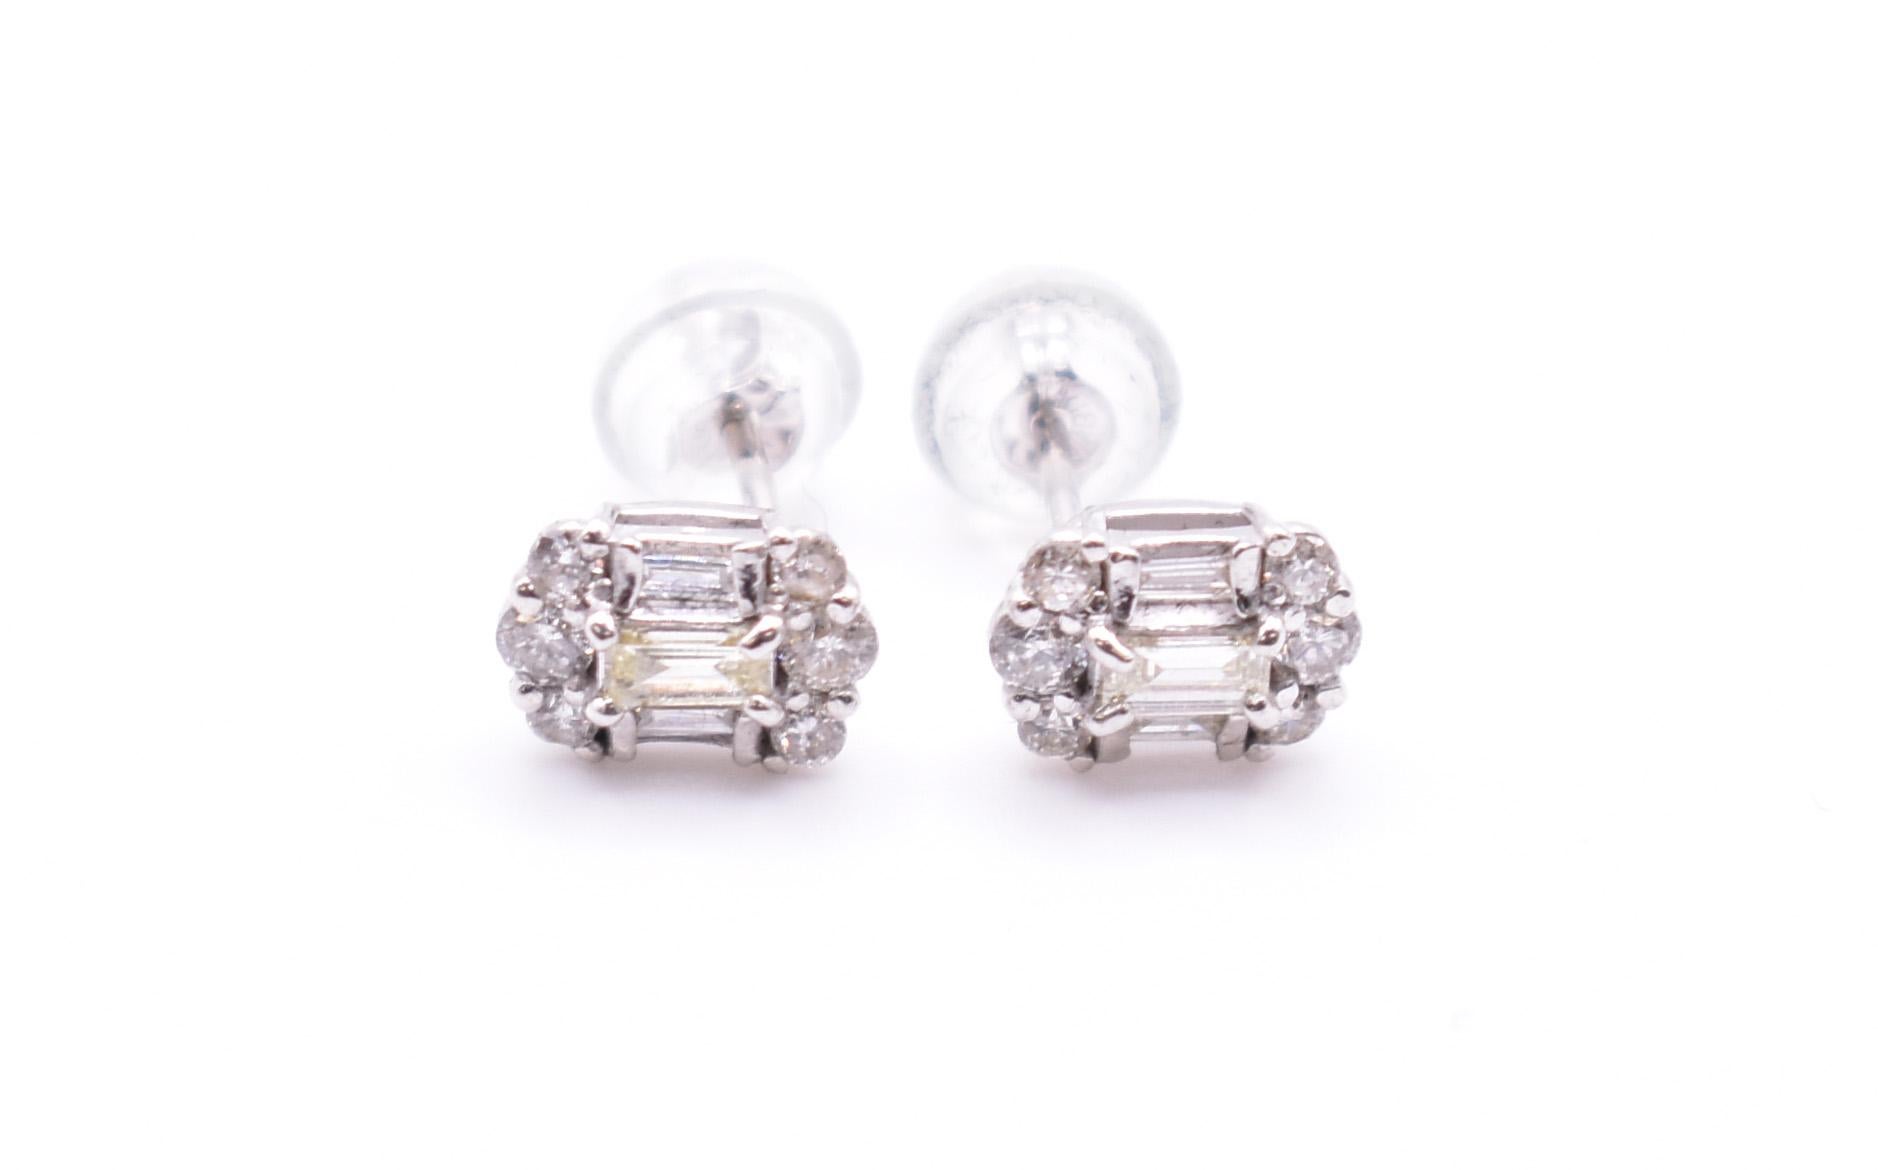 Baguette Cut Pair of 18k White Gold Diamond Earrings For Sale